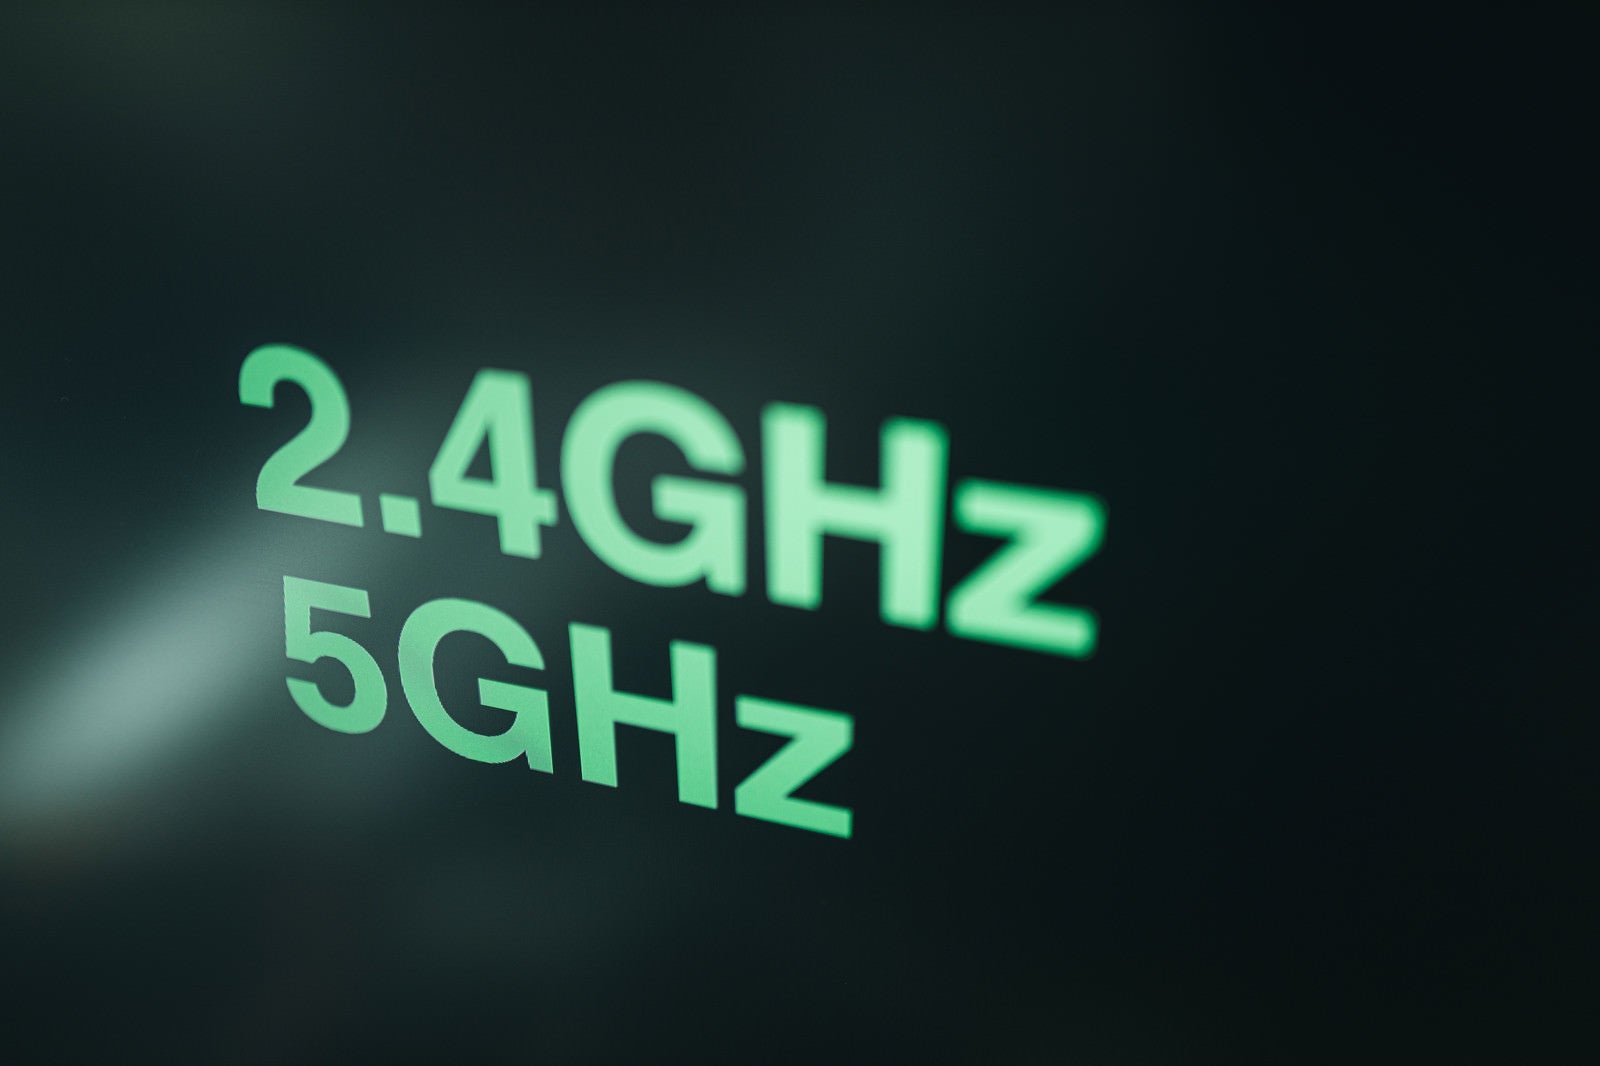 「2.4GHzと5GHzの周波帯」の写真